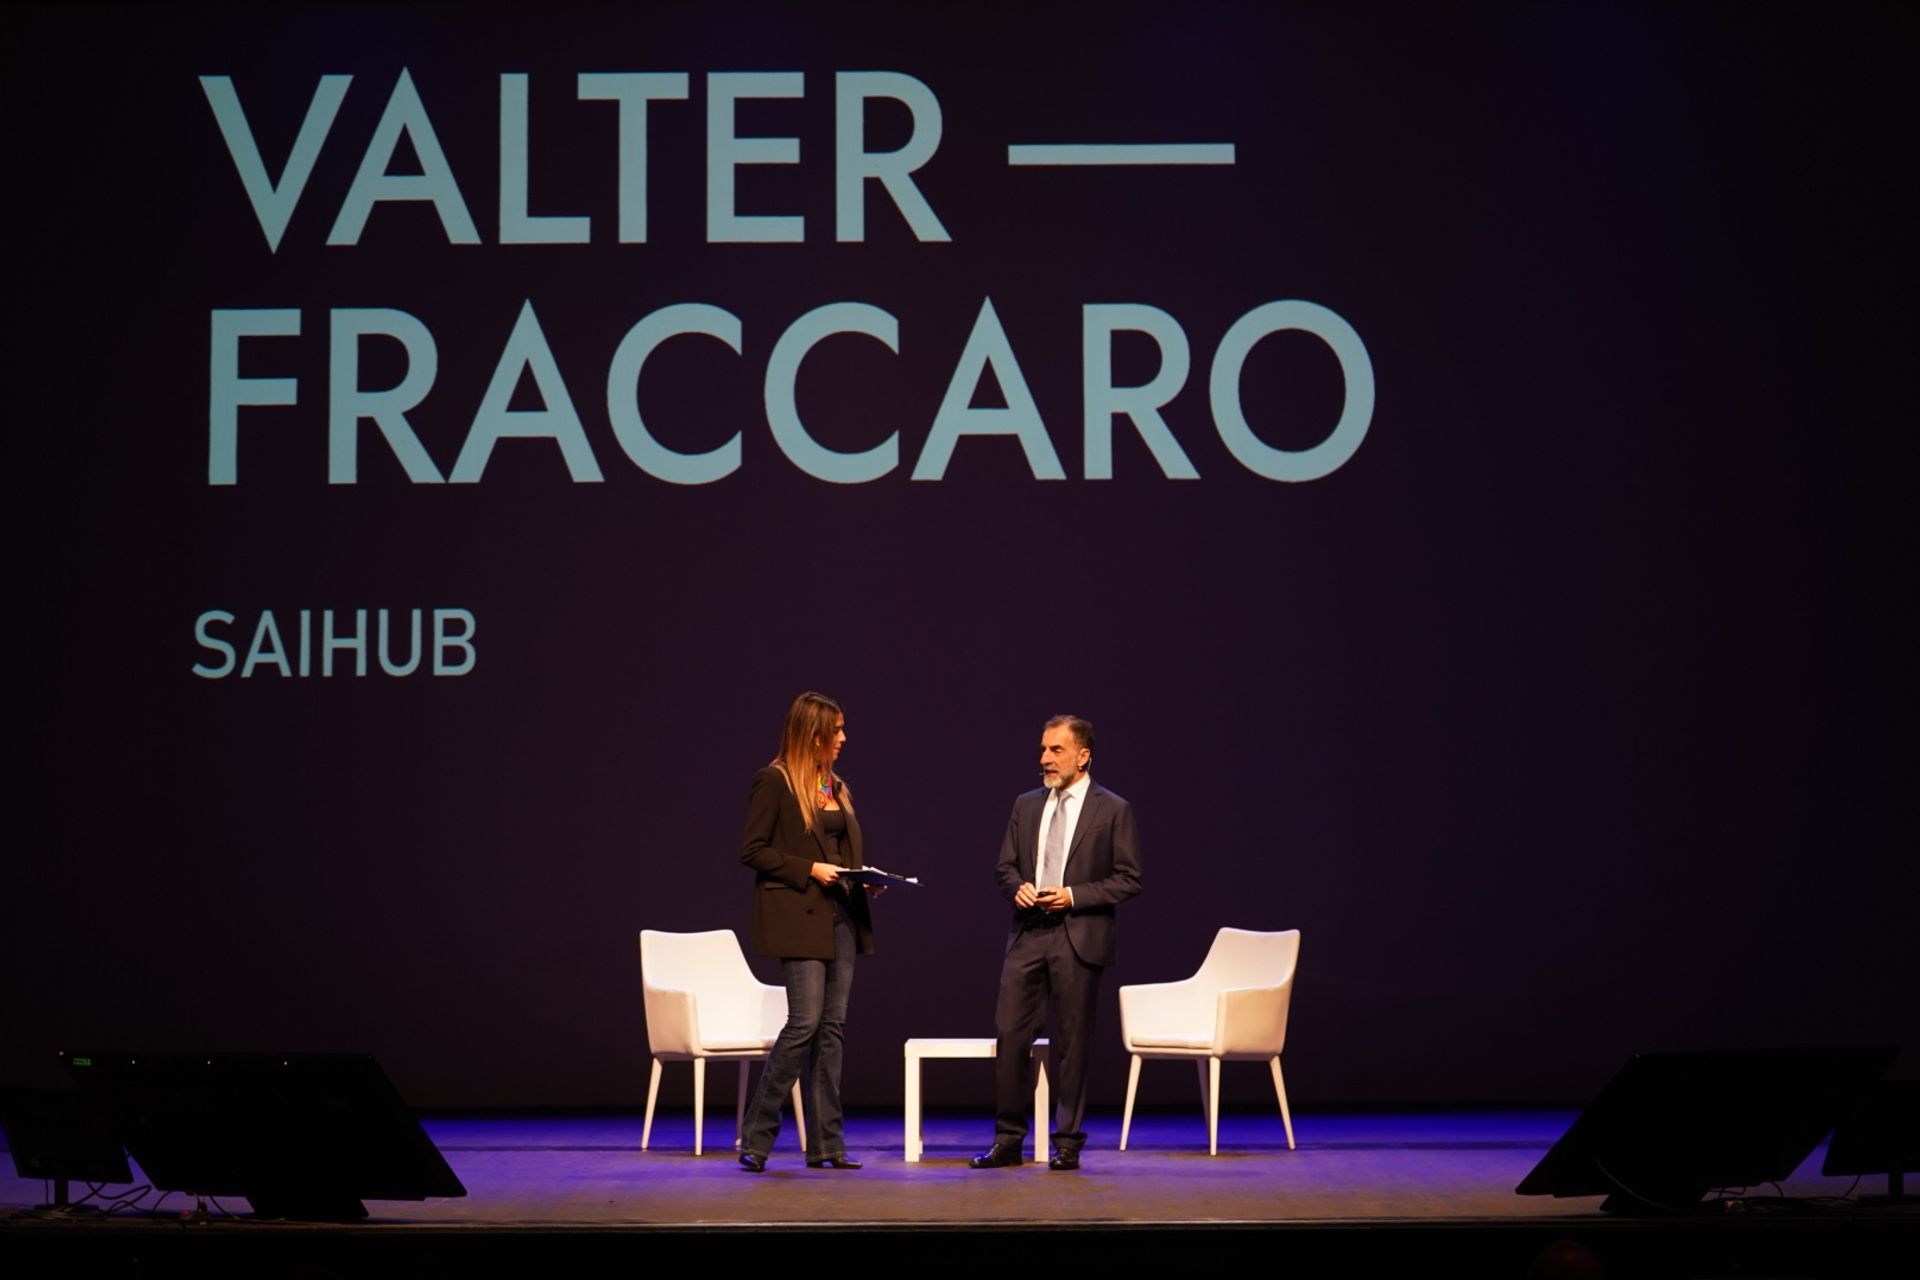 Valter Fraccaro är president för SAIHub, en akronym för Siena Artificial Intelligence Hub, ett nav av global betydelse inom området för livsvetenskaper